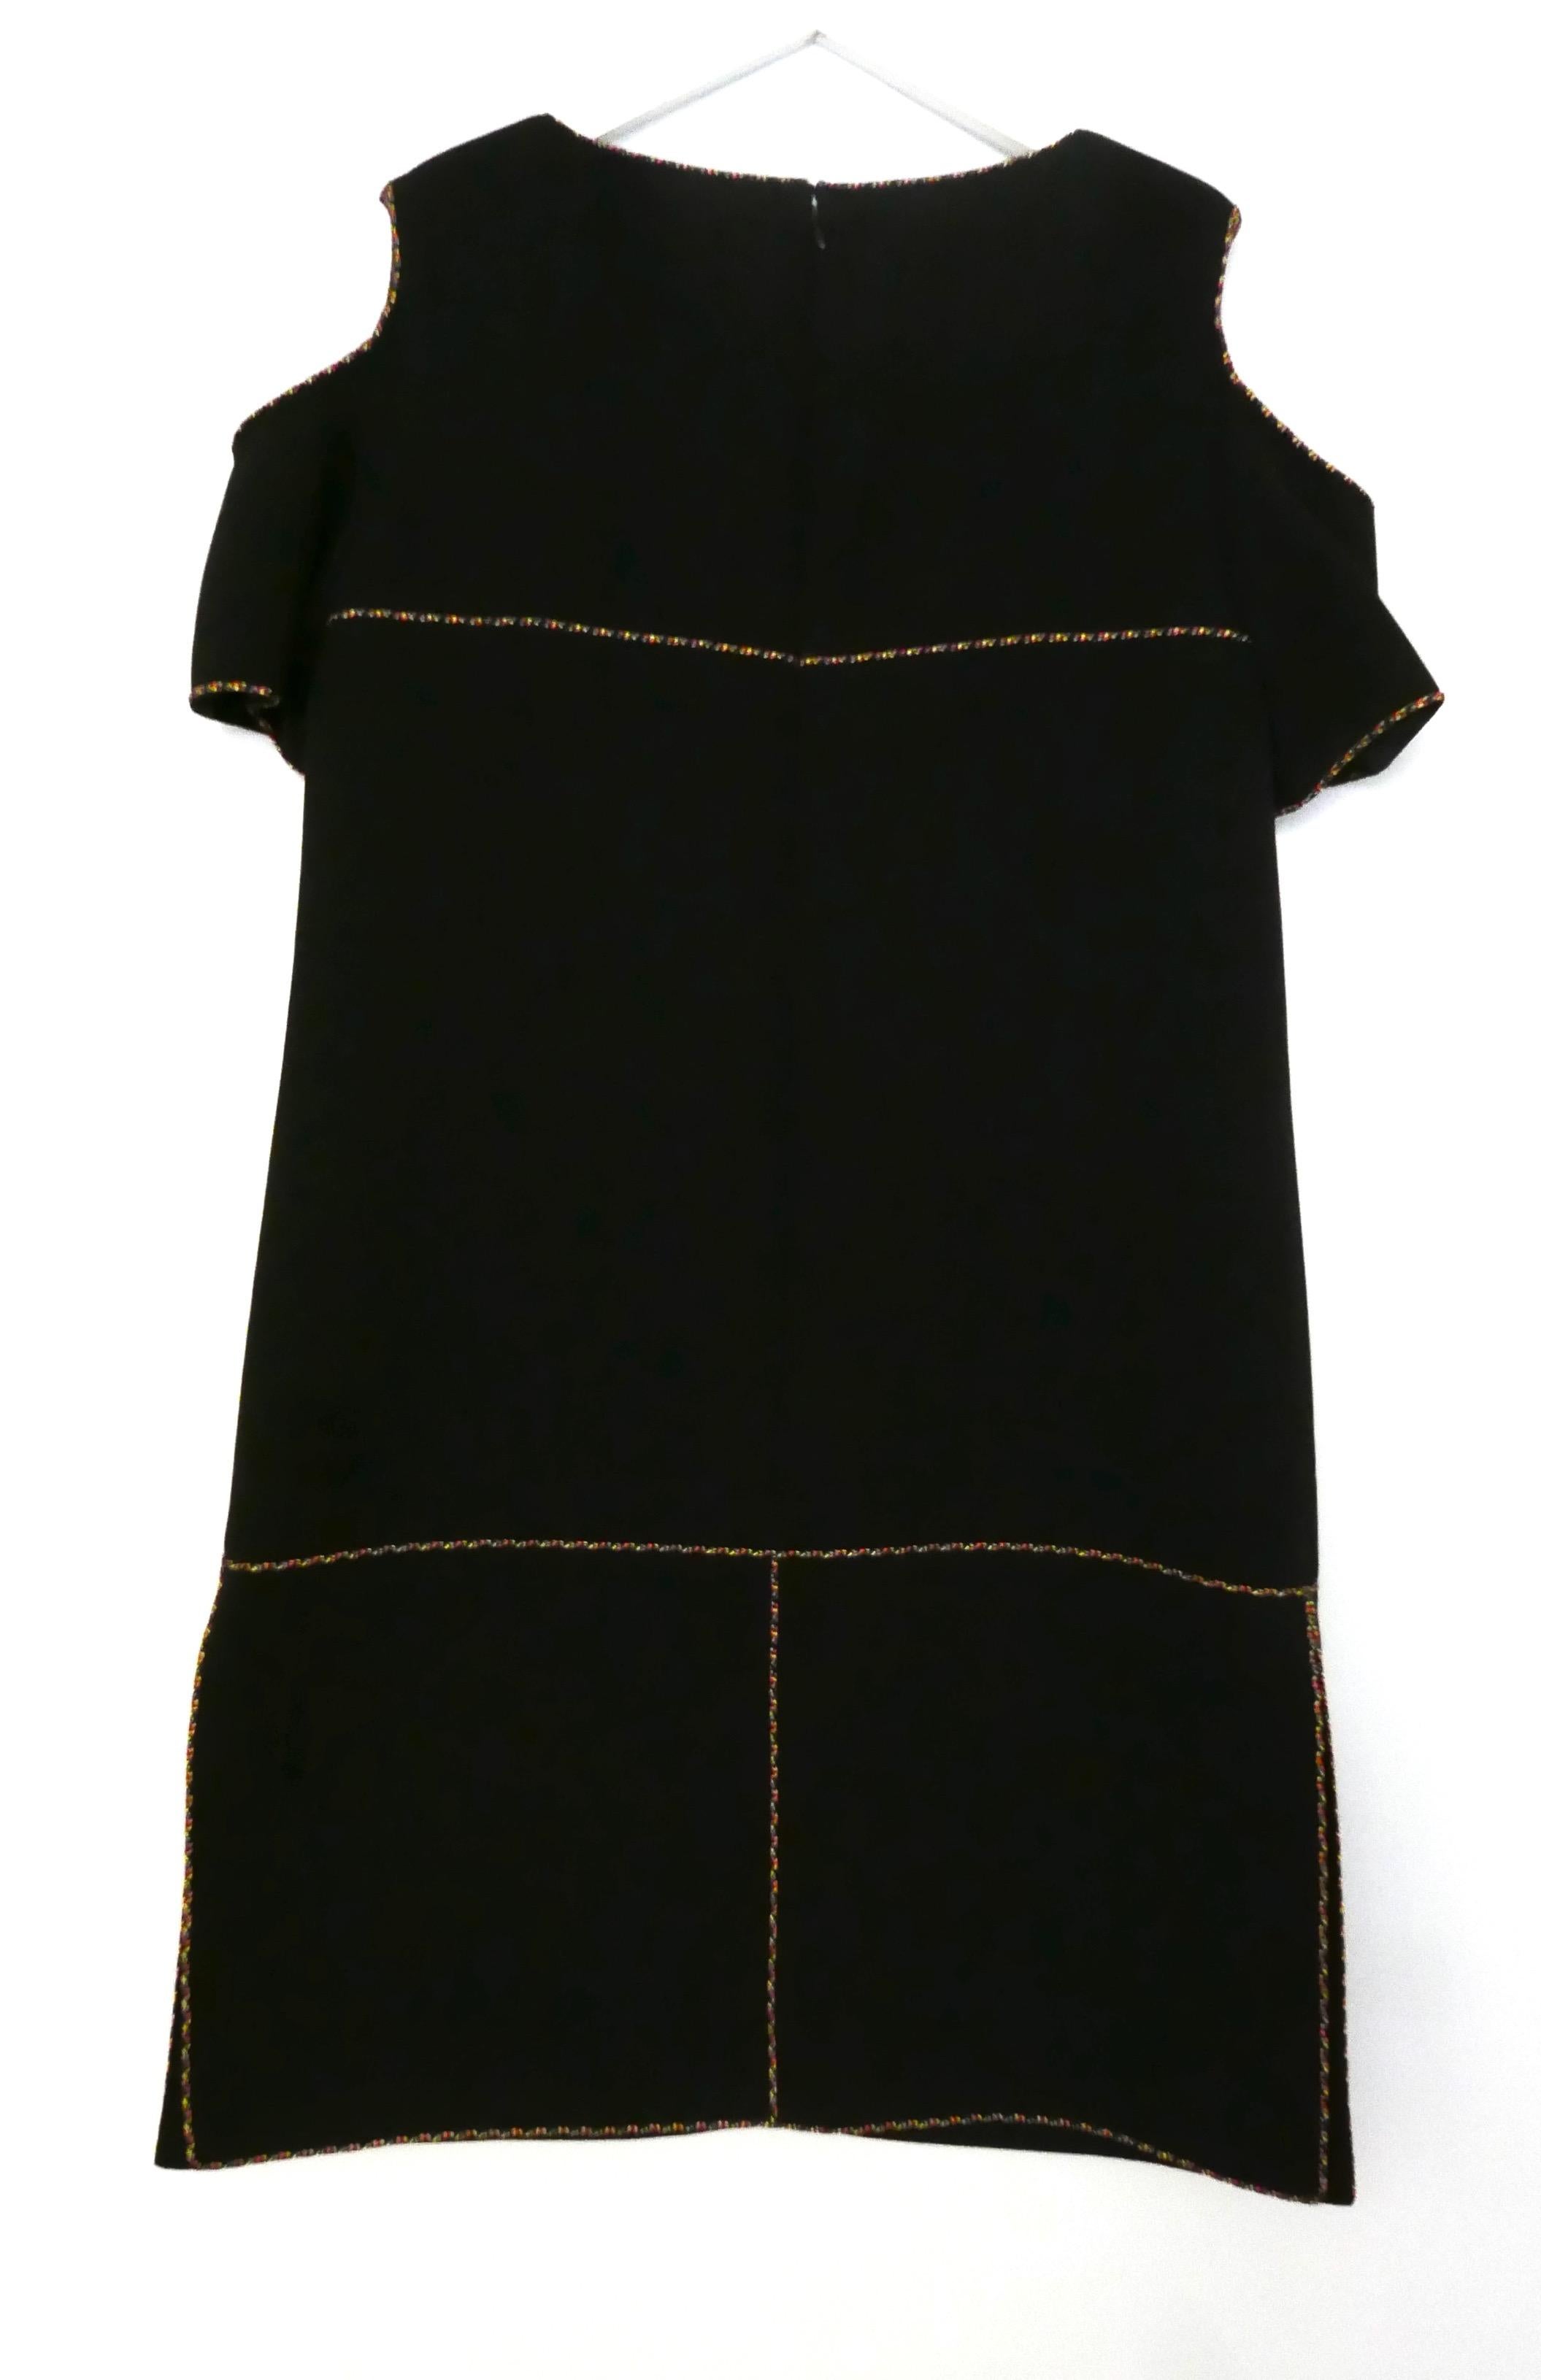 Chanel SS14 Tweed Rope Trim Black Cold Shoulder Shift Dress For Sale 3